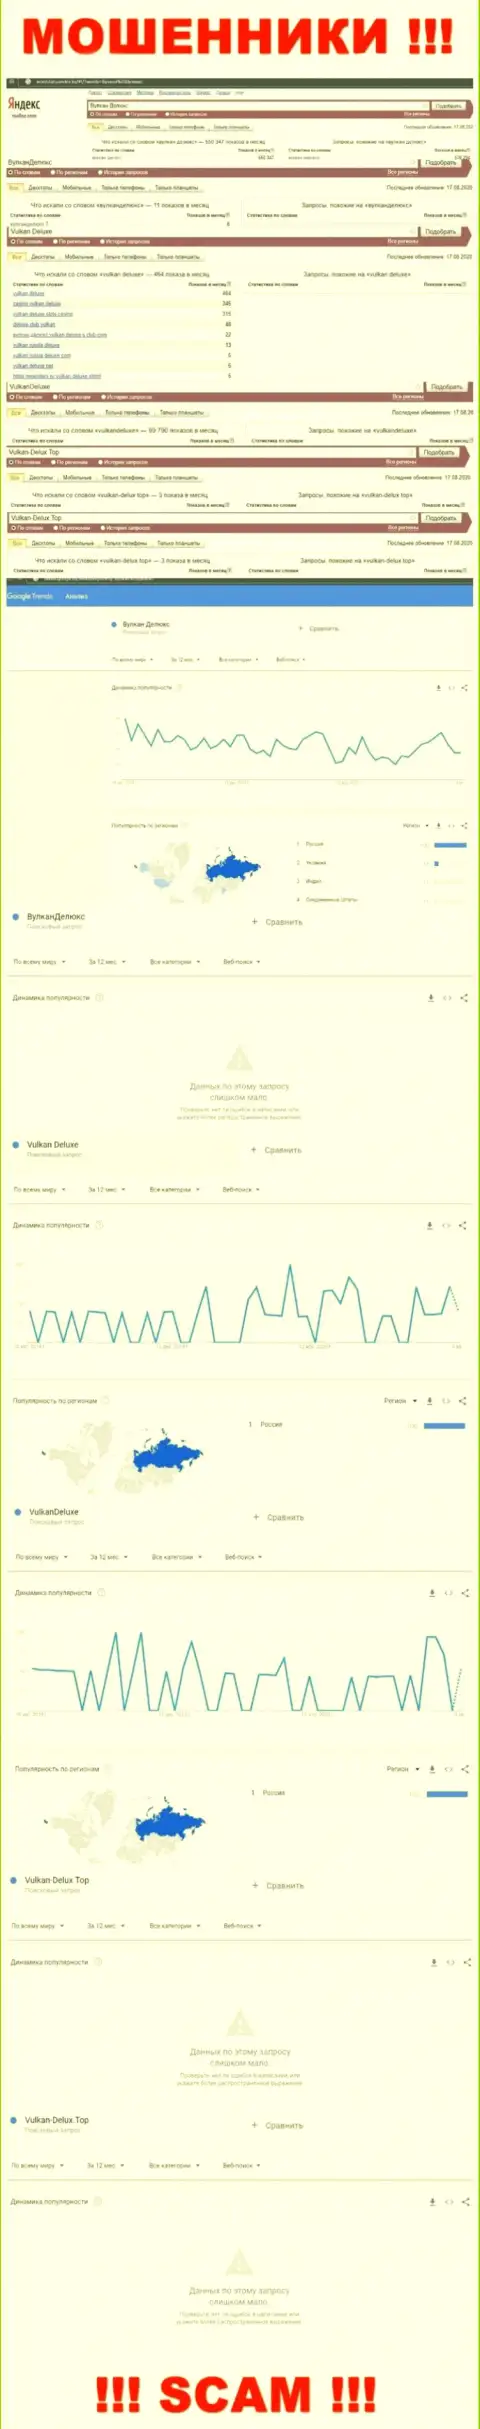 Статистические данные поисковых запросов по мошенникам Vulkan-Delux Top во всемирной интернет паутине